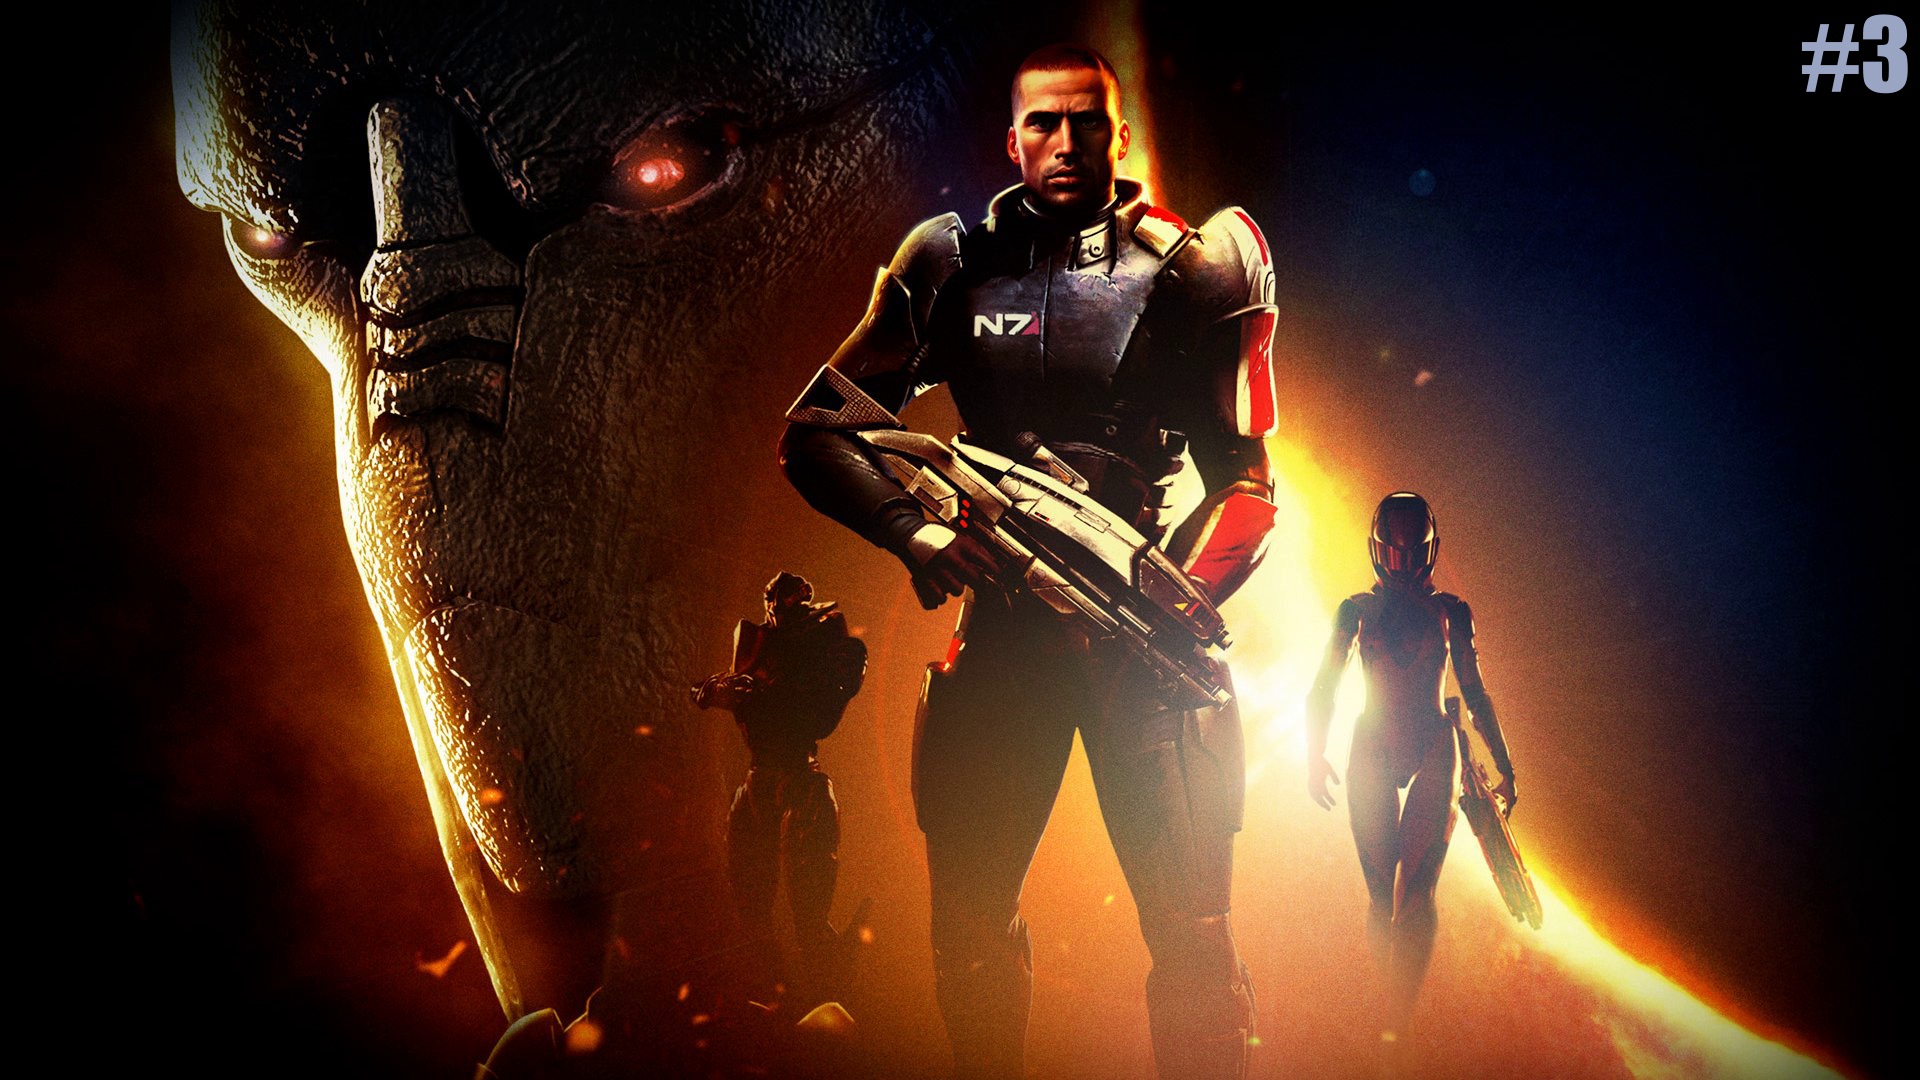 "ВСПОМИНАЯ КЛАССИКУ" Mass Effect прохождение на Русском Часть#3 Стрим1|Масс Эффект|Walkthrough|Стрим